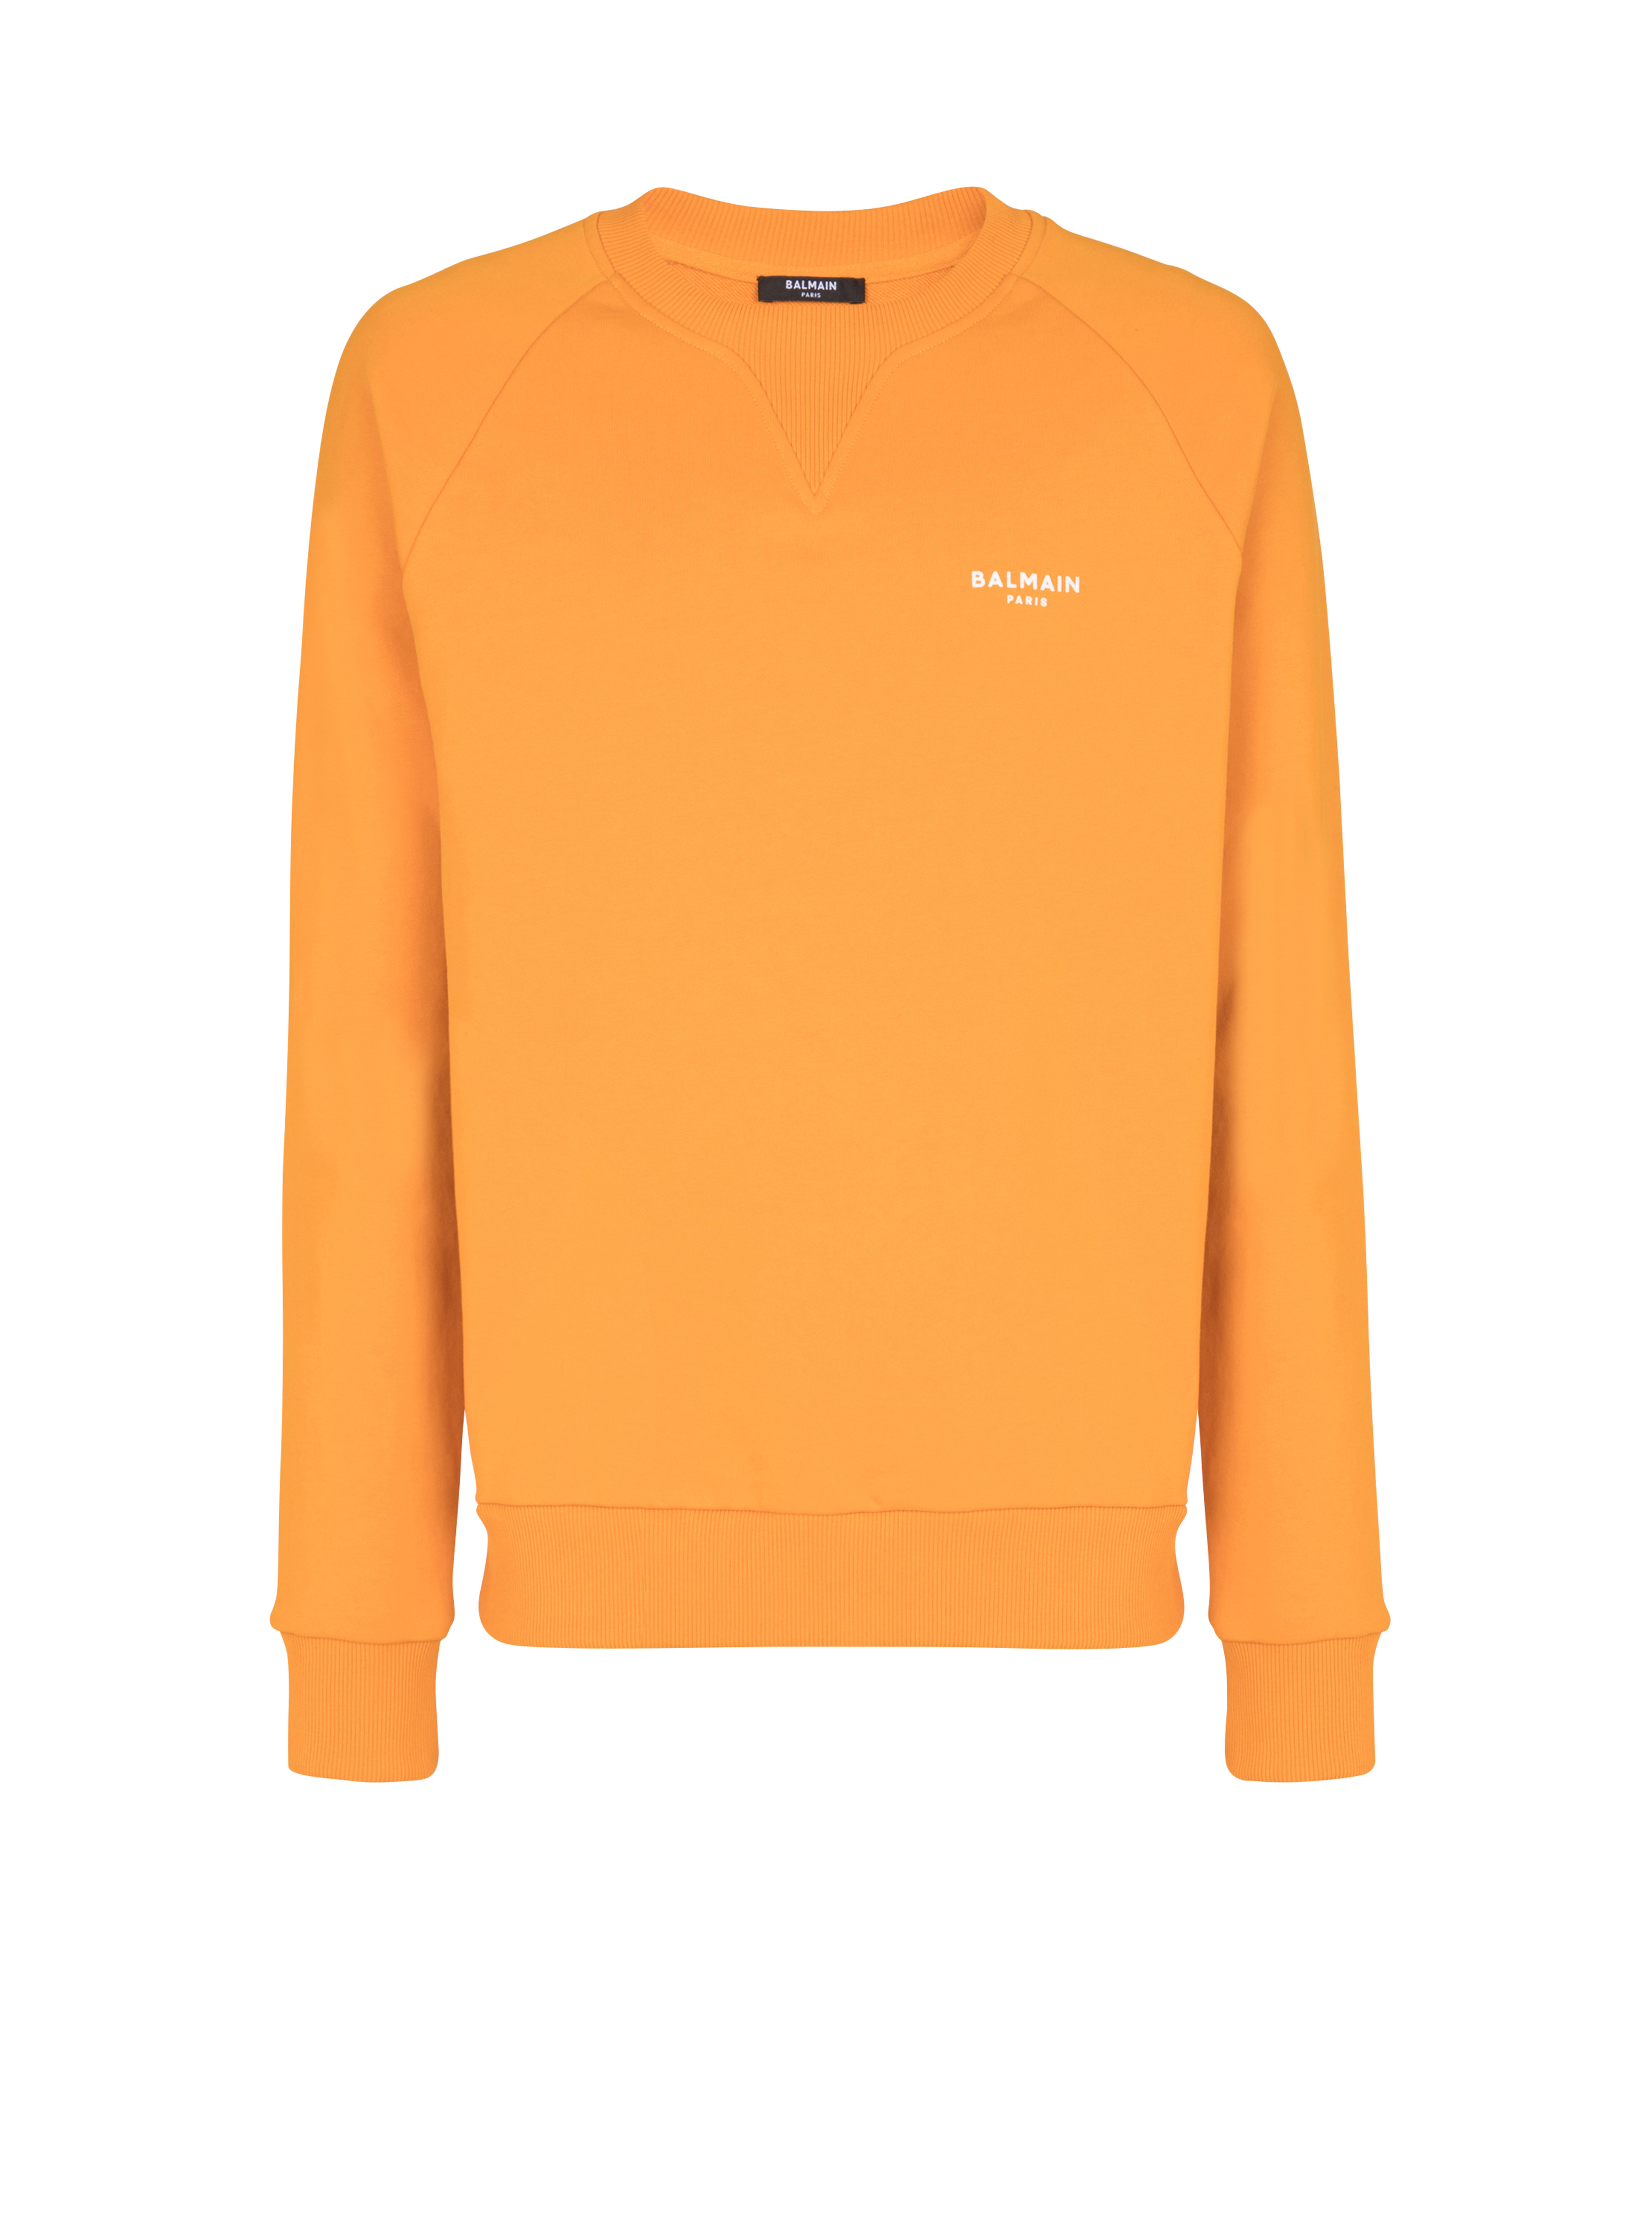 Balmain巴尔曼标志印花环保设计棉质运动衫, orange